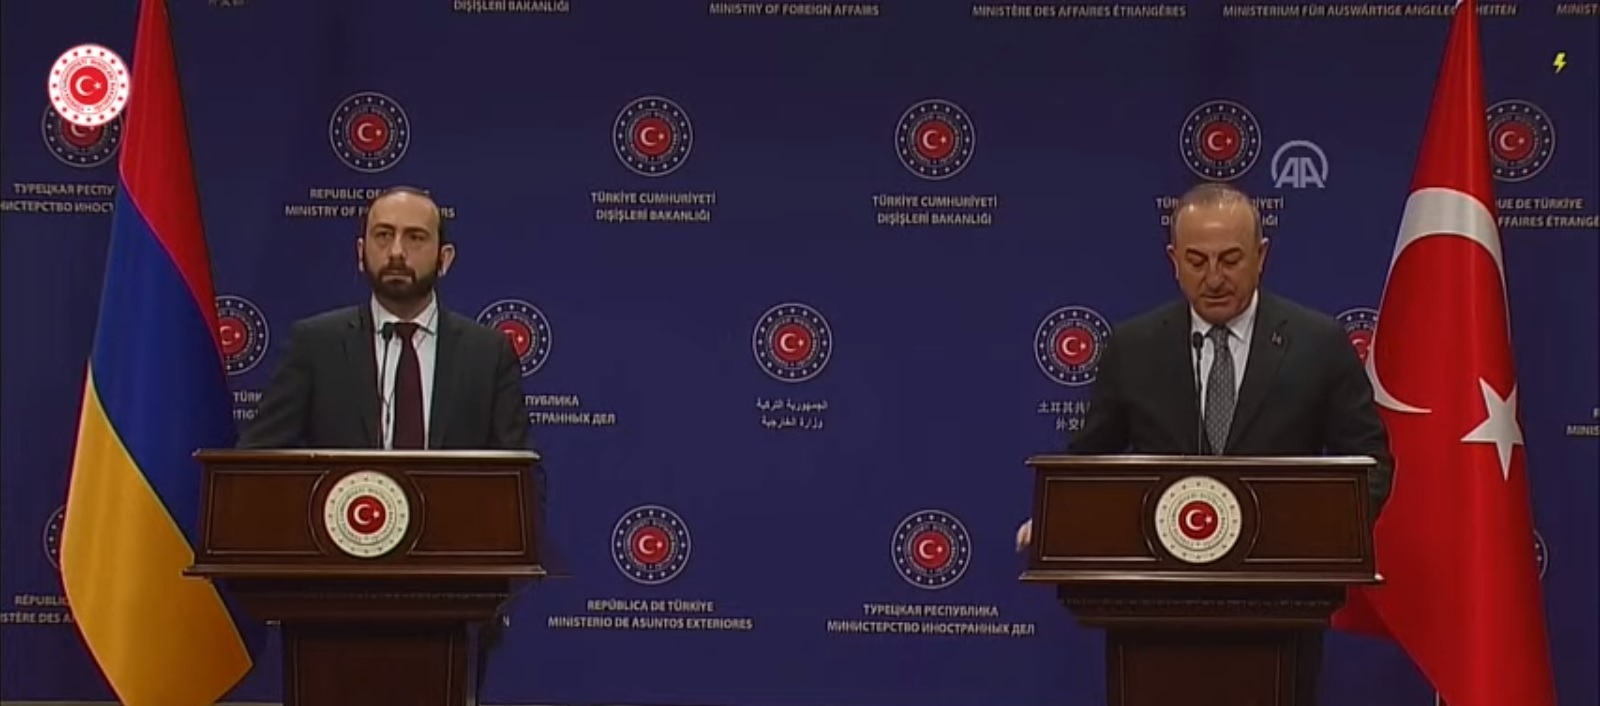 Ermenistan Dışişleri Bakanı Türk mevkidaşı ile ortak basın toplantısında konuştu (Video)